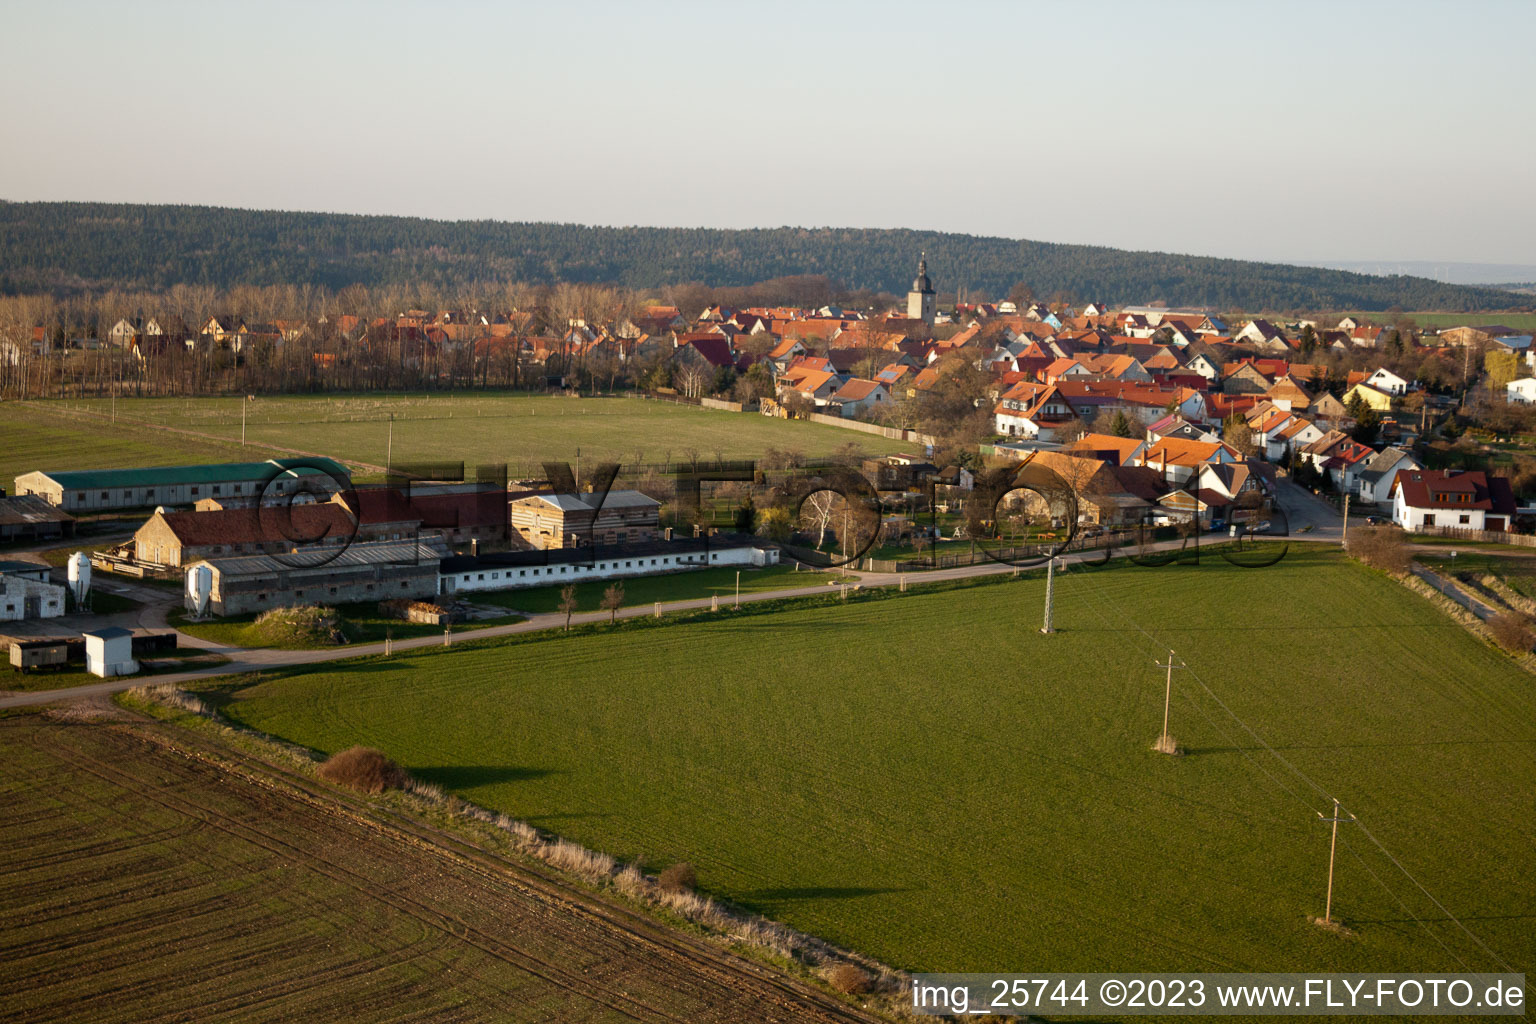 Vue aérienne de Vol cross-country vers le Wachsenburg à Gossel dans le département Thuringe, Allemagne